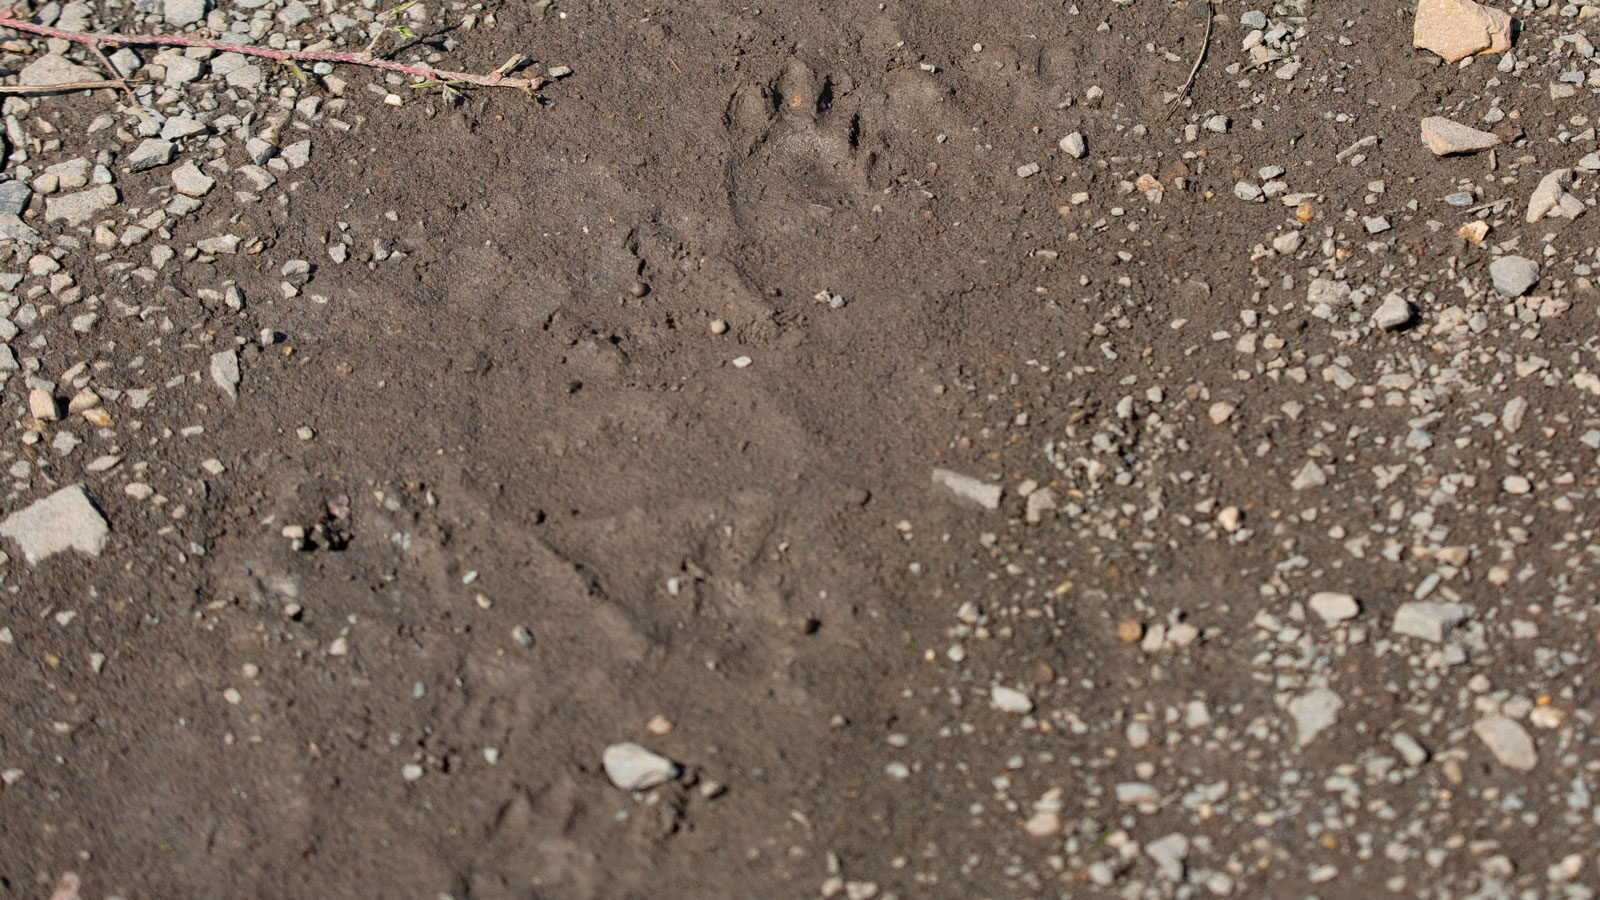 Striped skunk tracks in loose mud